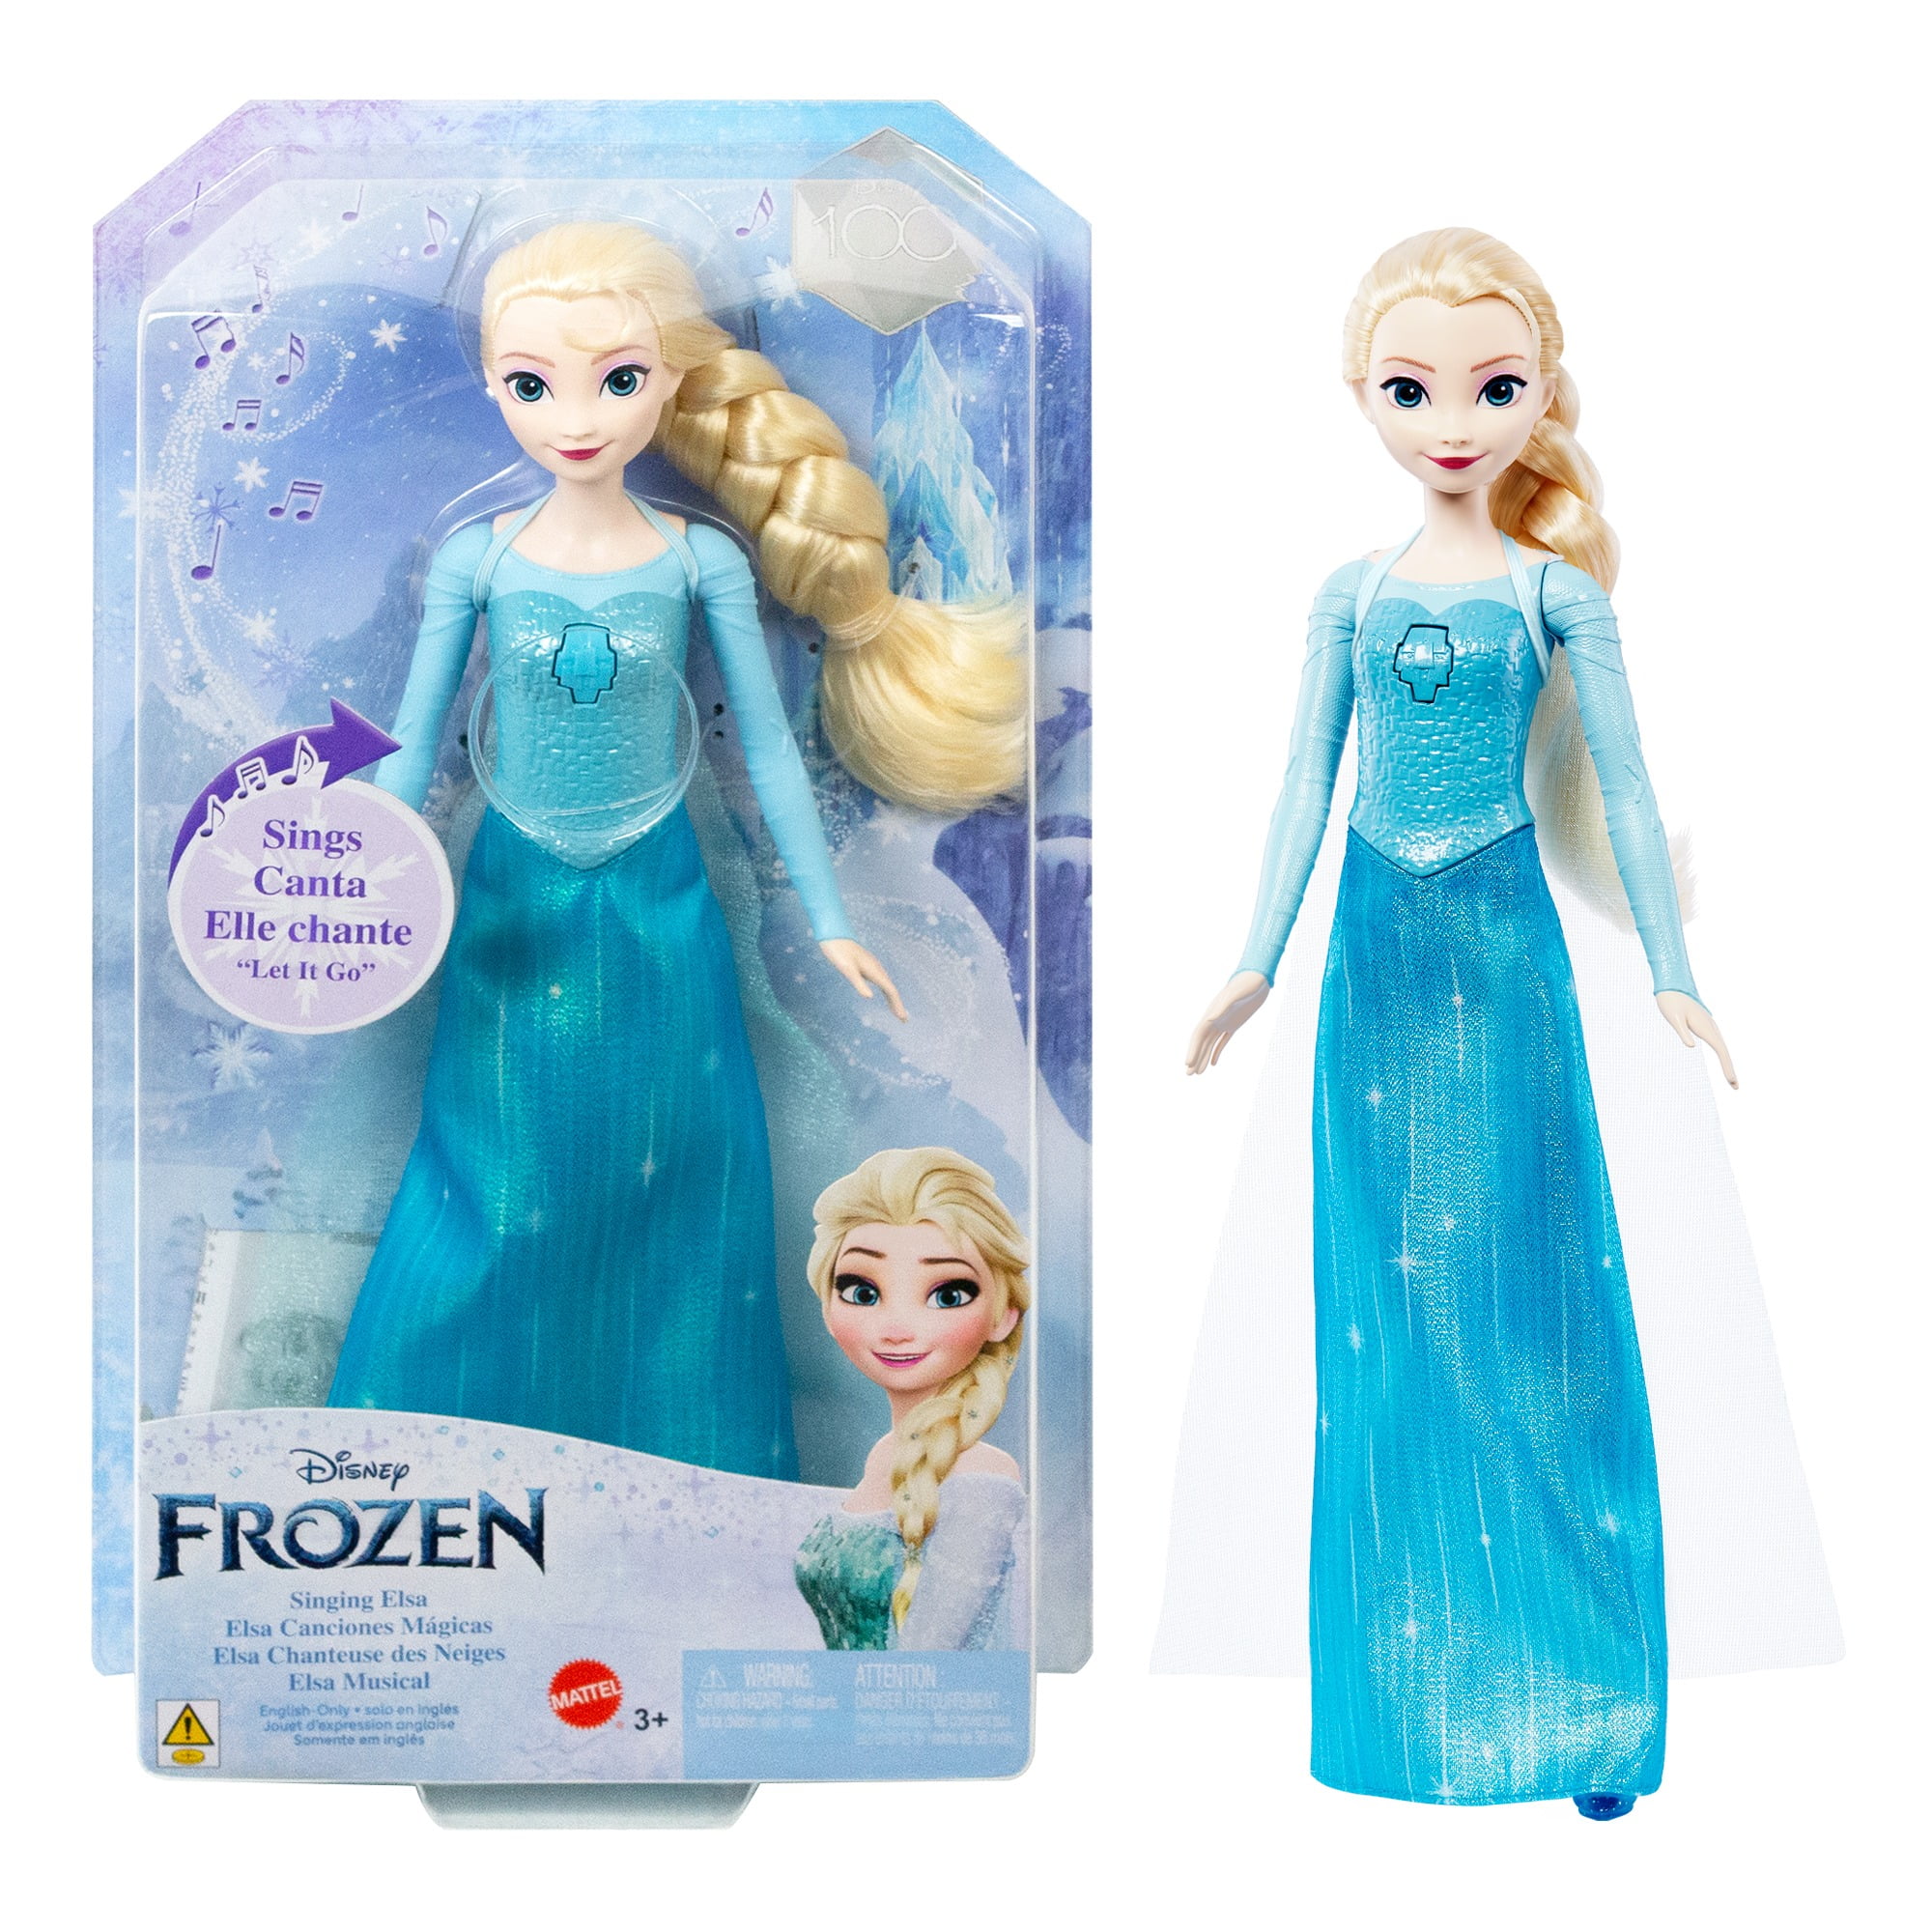 Frozen Elsa Pinata 19” x 12” x 6”